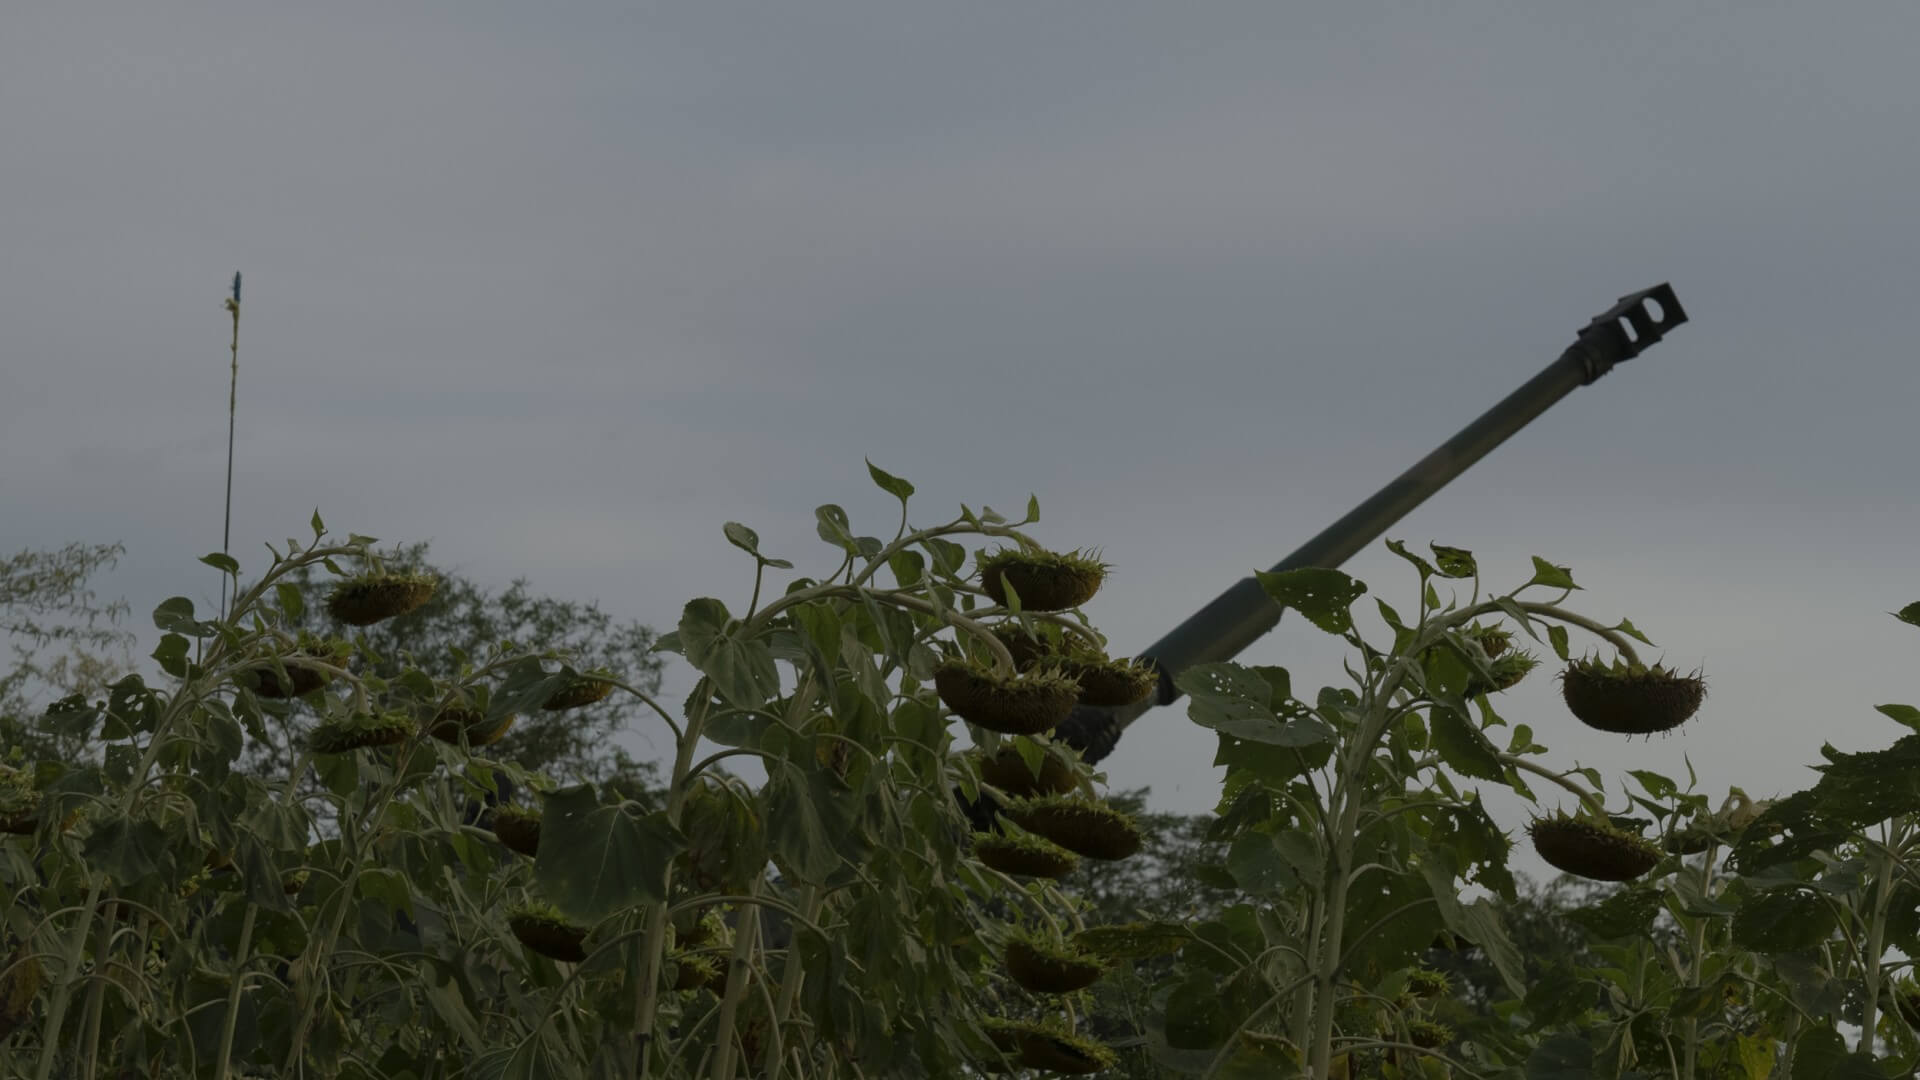 04 頓巴斯前線，烏克蘭，2022年8月18日 ©張乾琦、馬格蘭攝影通訊社-圖片